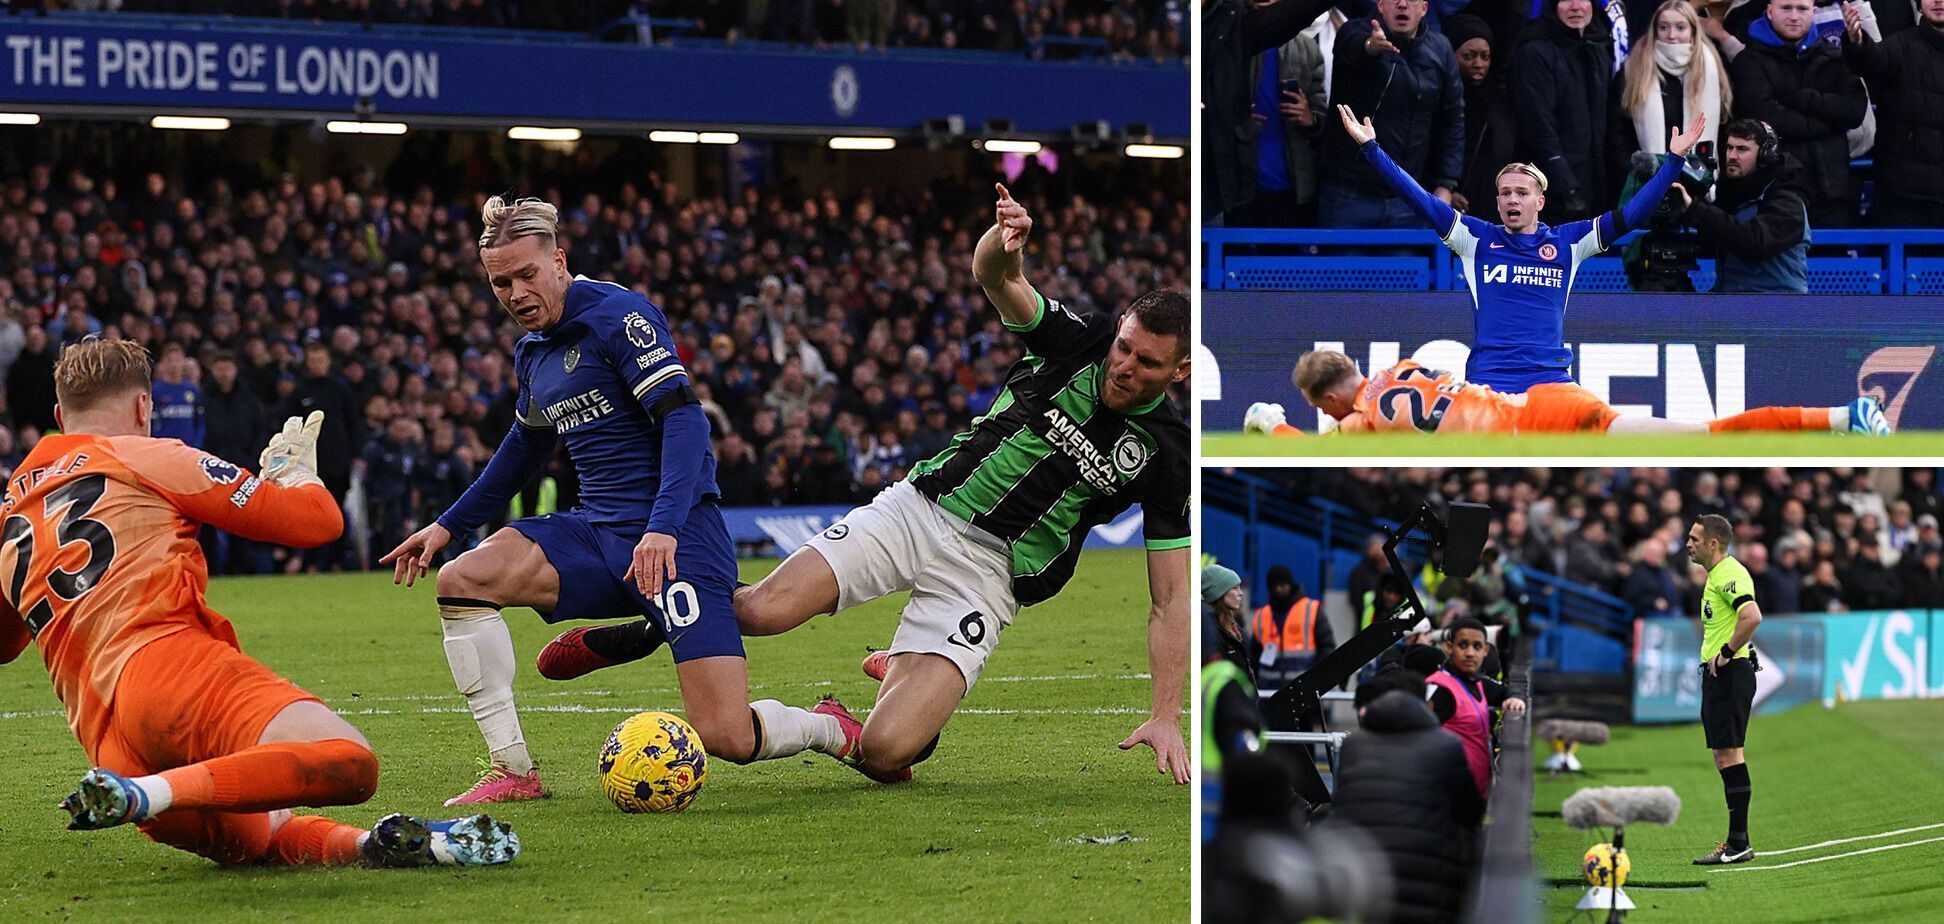 Mudryk strzelił gola w ostatnich sekundach i zapewnił Chelsea awans do półfinału Pucharu Ligi Angielskiej